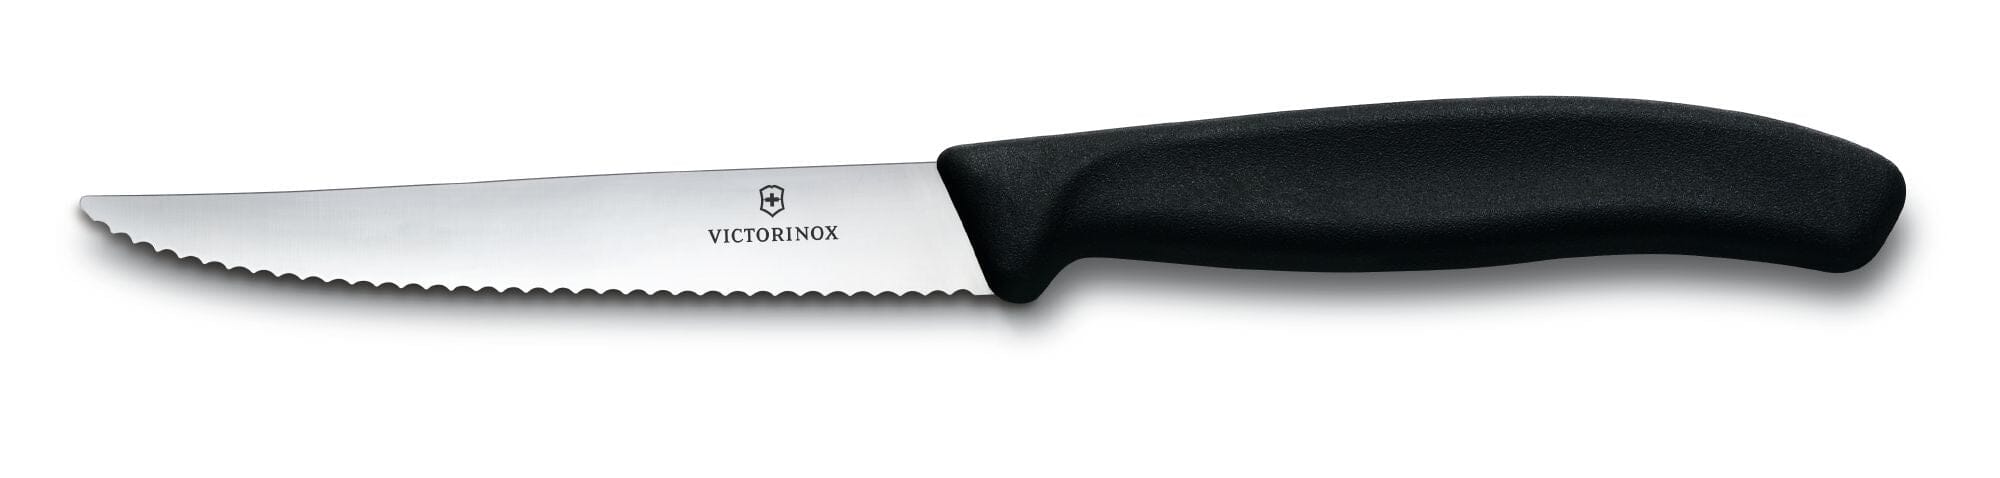 Victorinox Steak Knife Serrated Pointed Tip Black Handle  6.7233